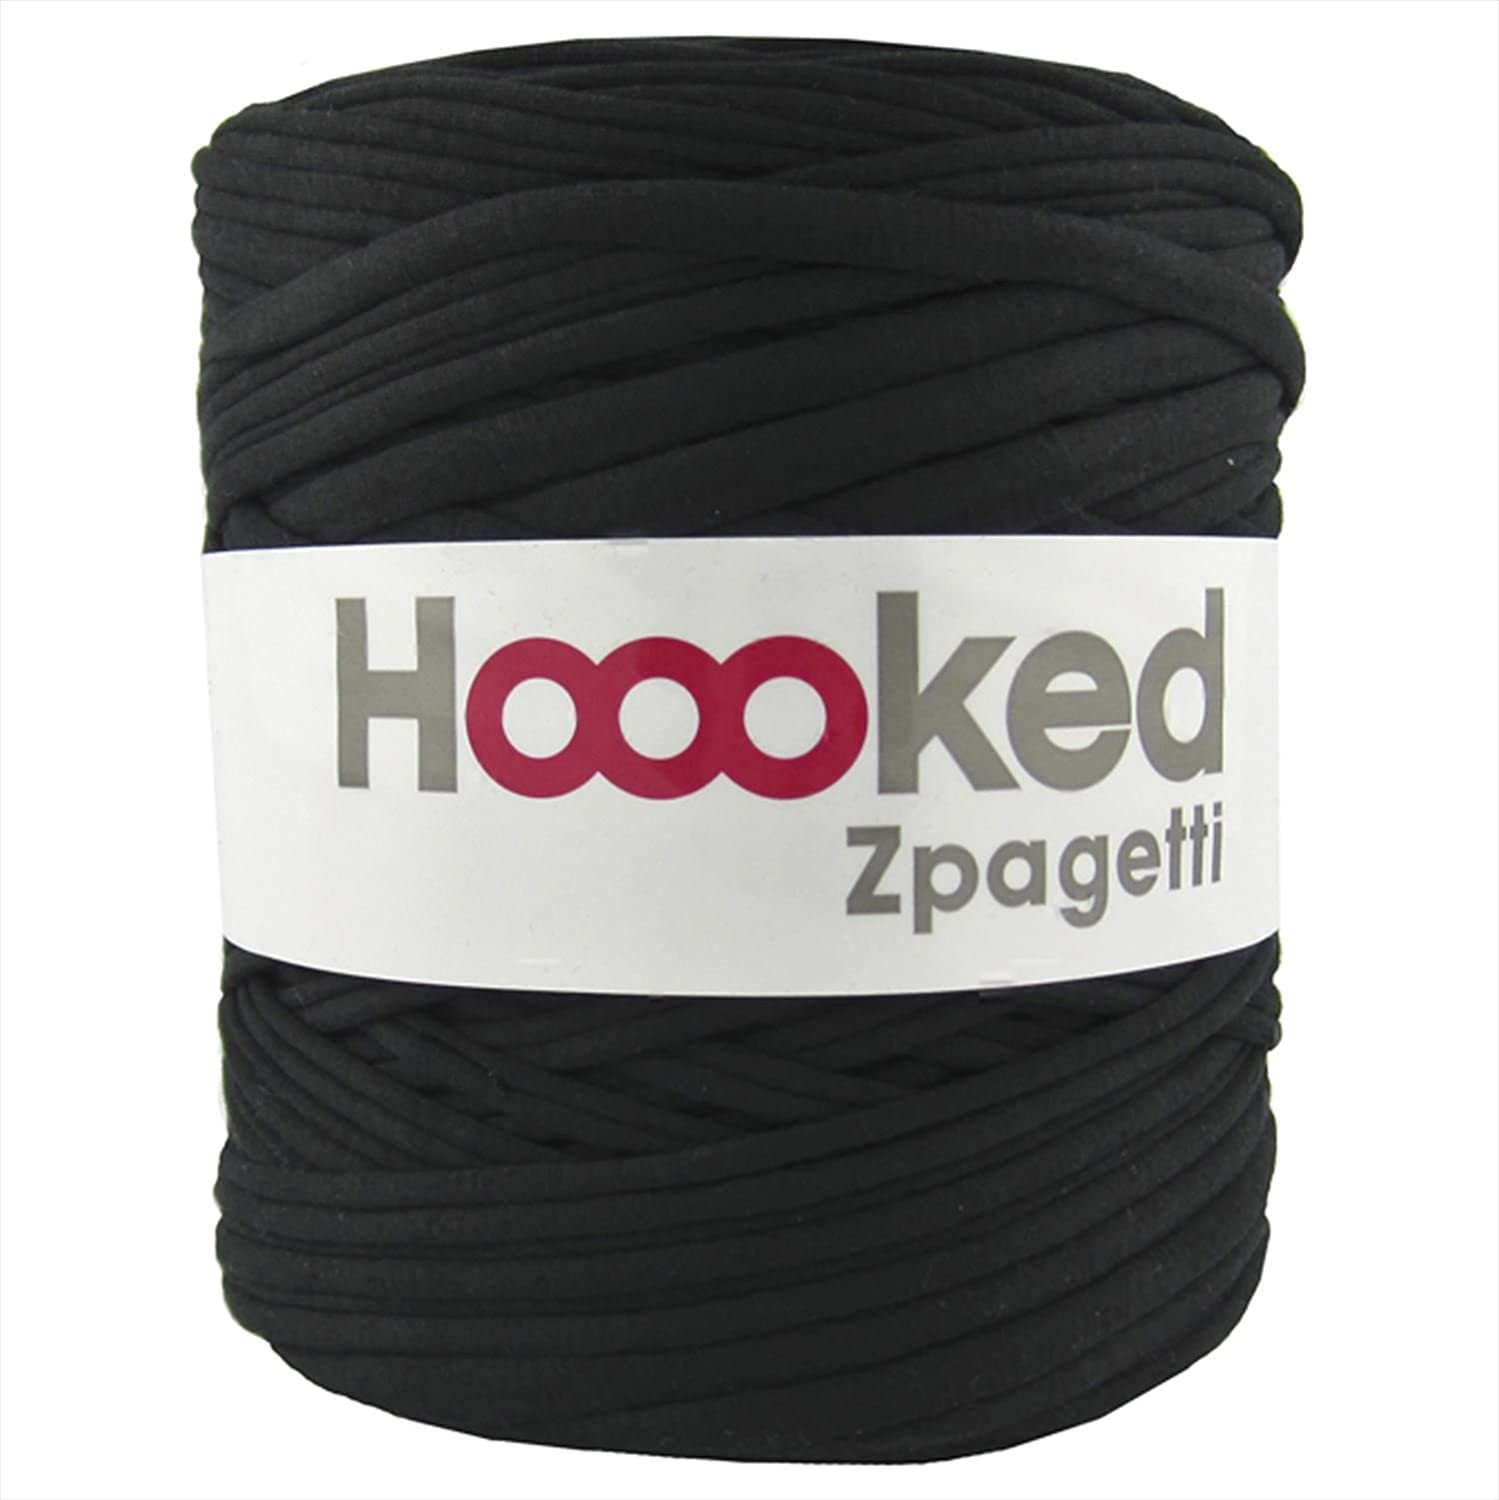 【ポイント最大20倍】 DMC Hoooked Zpagetti フックドゥ ズパゲッティ 超極太 800Black ブラック 約 120m